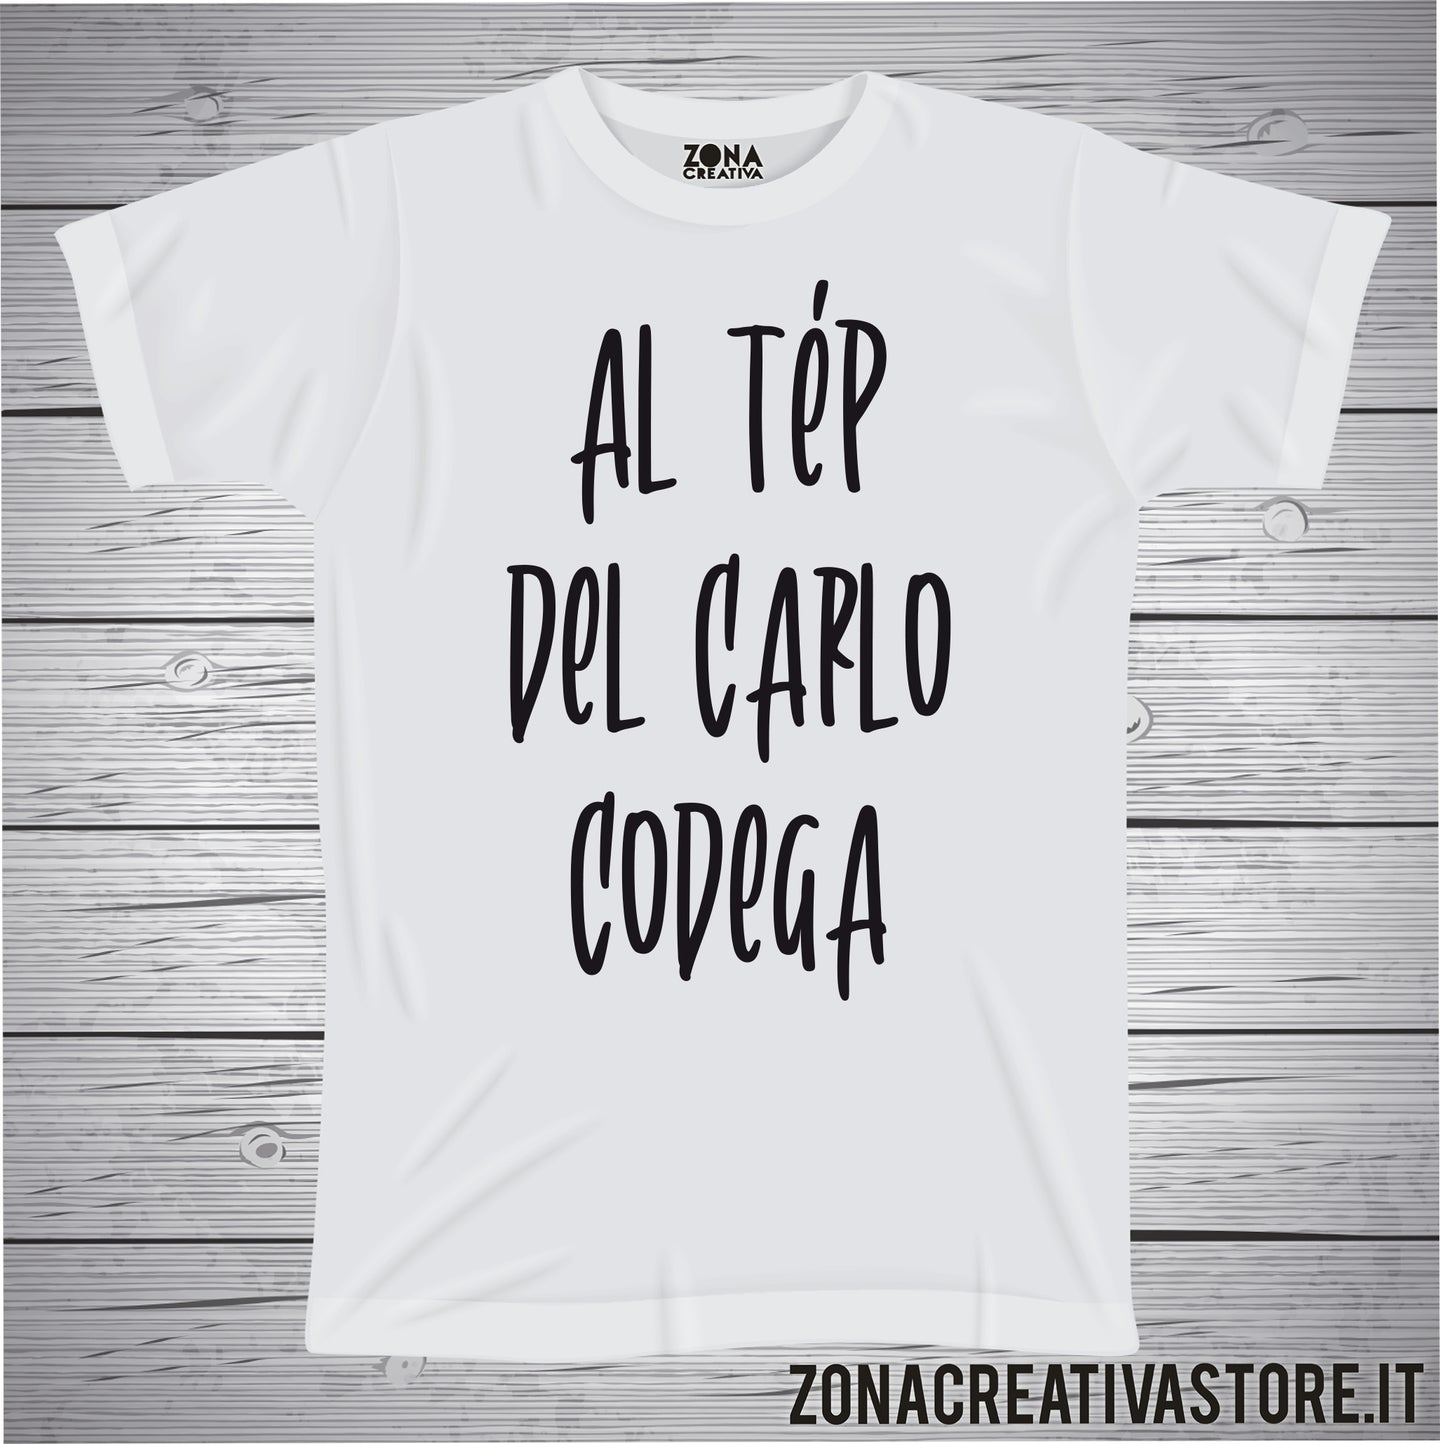 T-shirt divertente con frase in dialetto bergamasco Al tèp del carlo codega